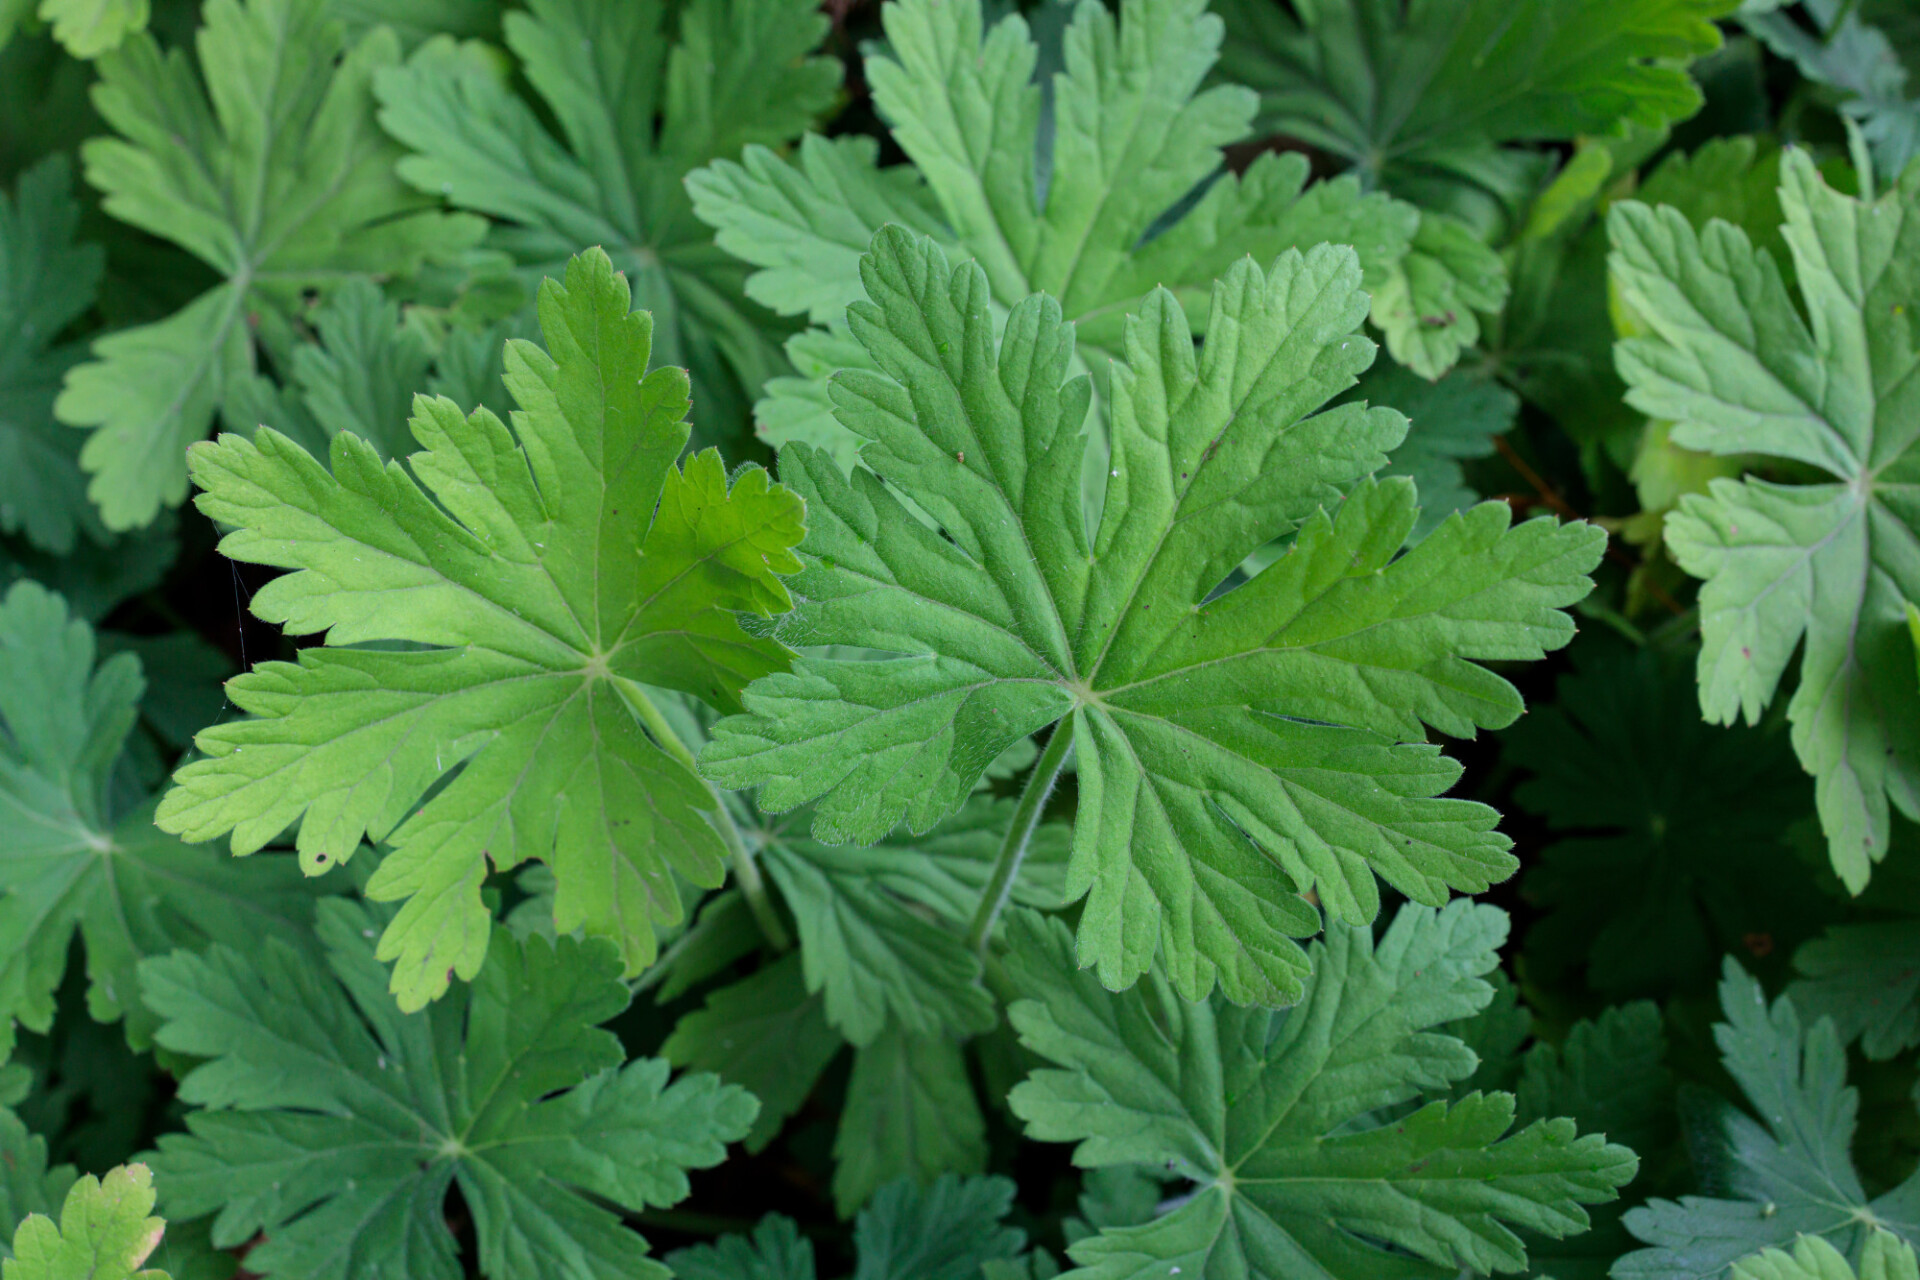 Geranium maculatum leaves